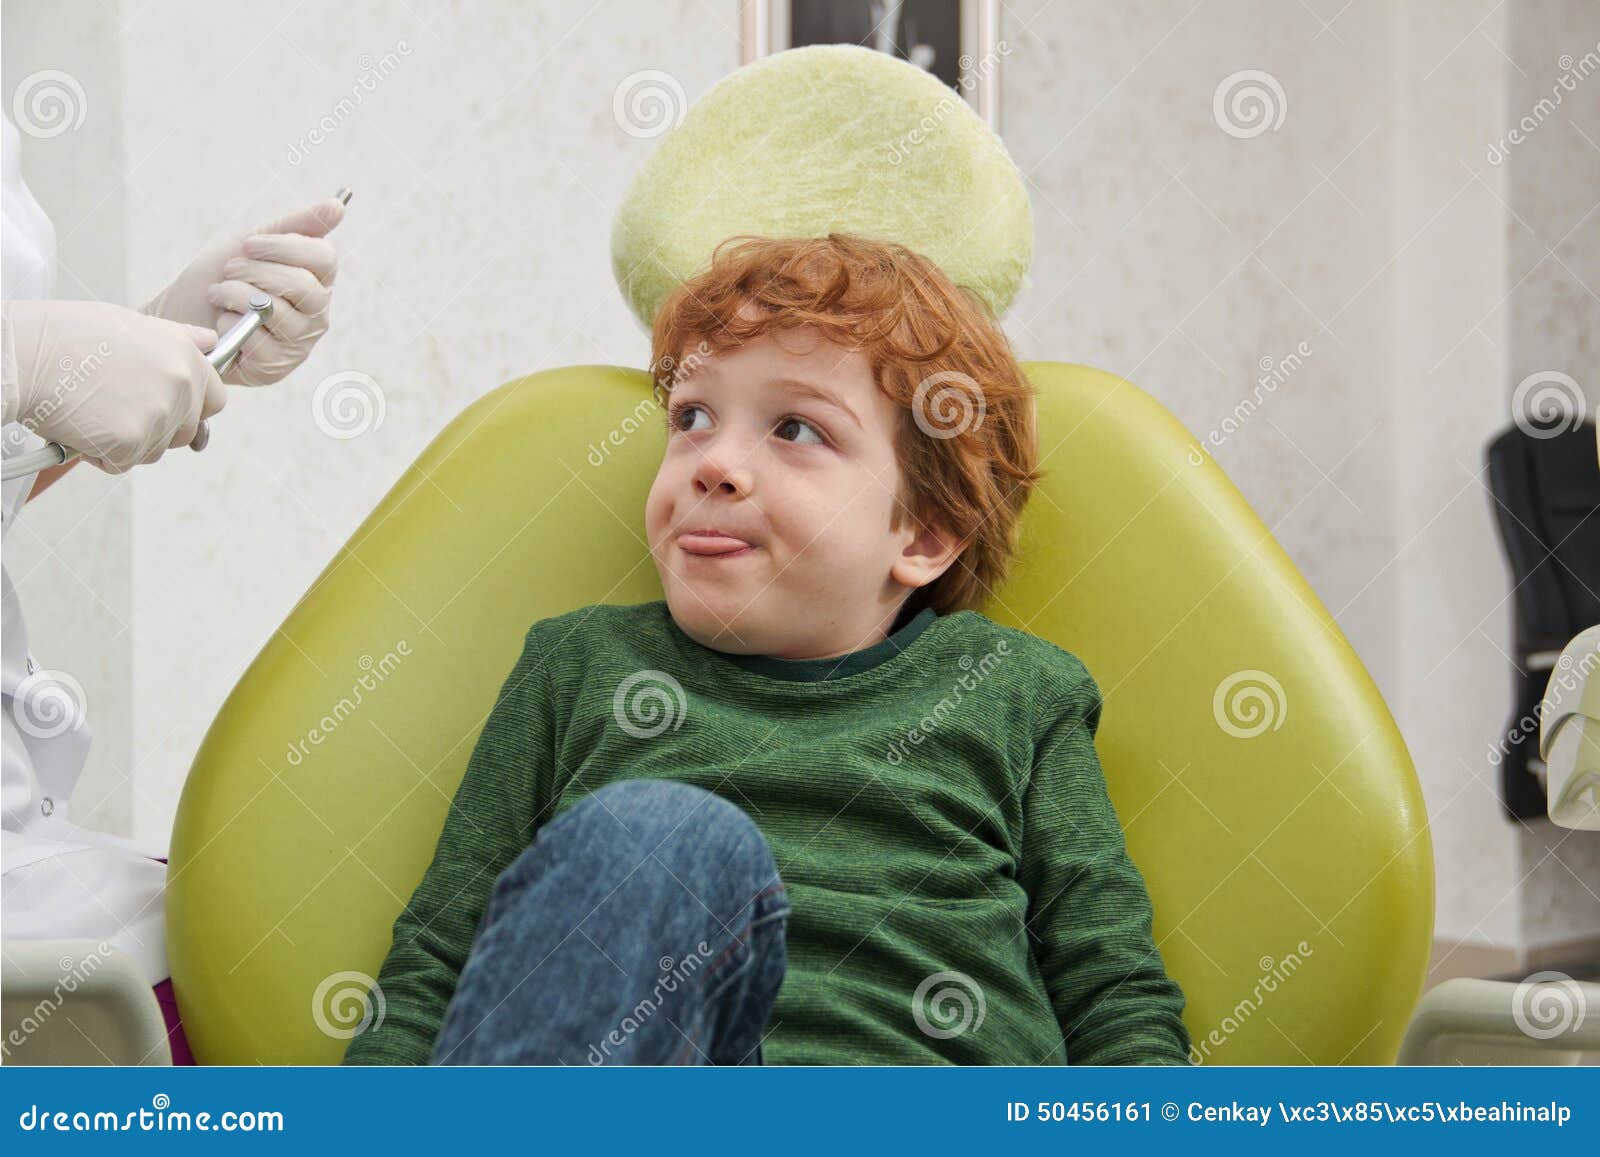 Вернувшись с прогулки у меня заболел зуб. Ребенок в кресле стоматолога. Стоматология дети плачут. Удержание в кресле стоматолога детей. Ребенок плачет в кресле у стоматолога.